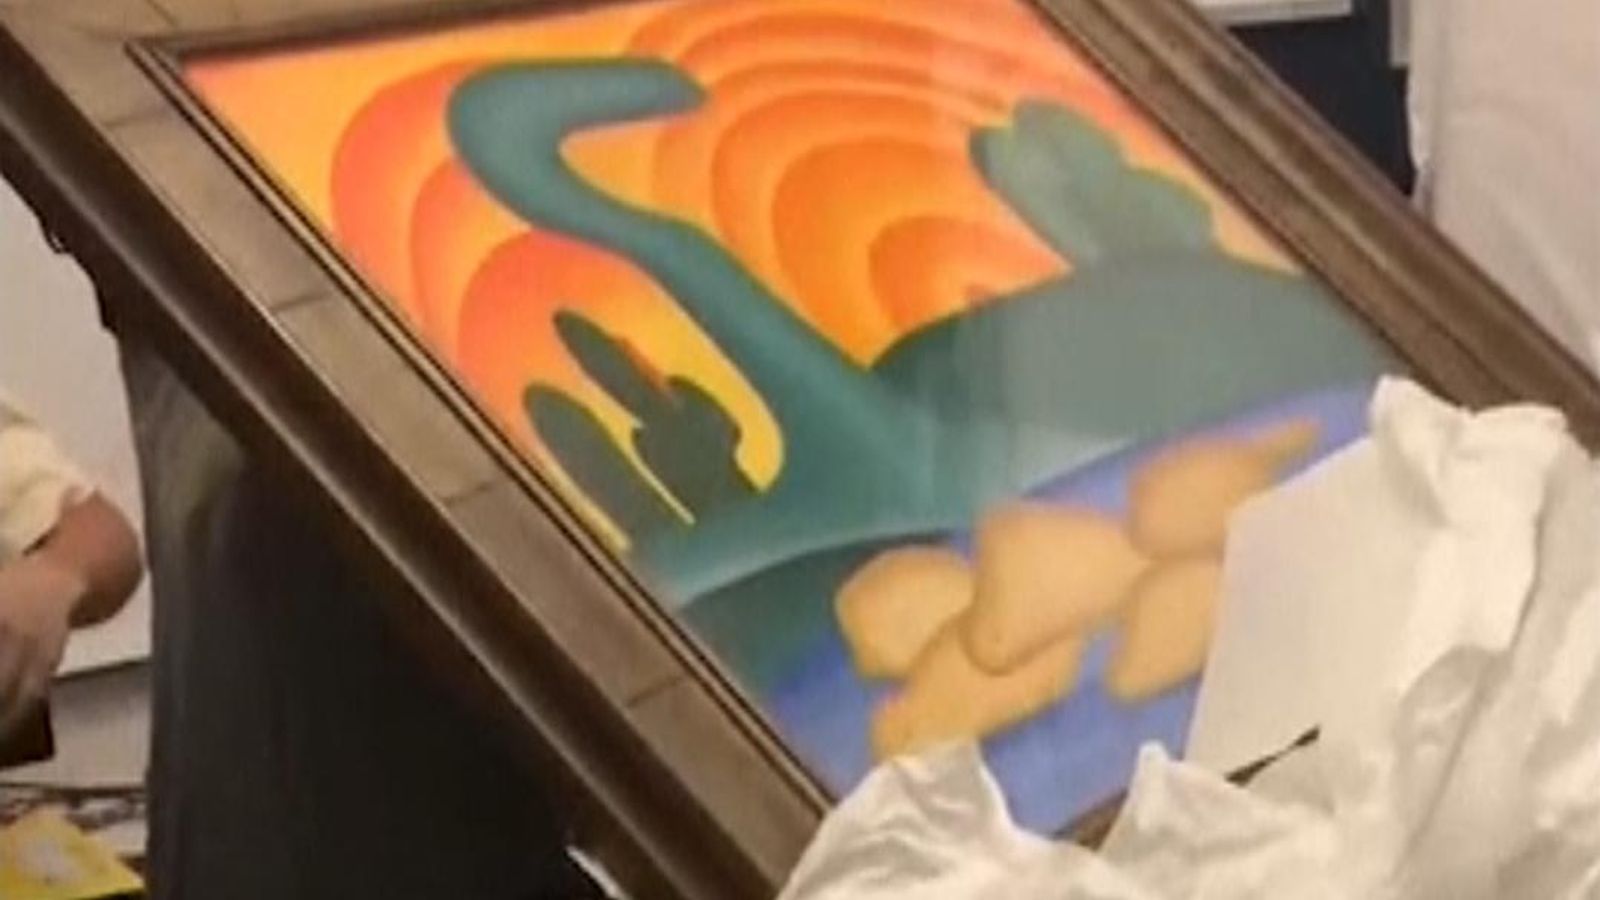 Art work stolen from elderly widow 'in bizarre soothsayer plot' found by police in Brazil | World News